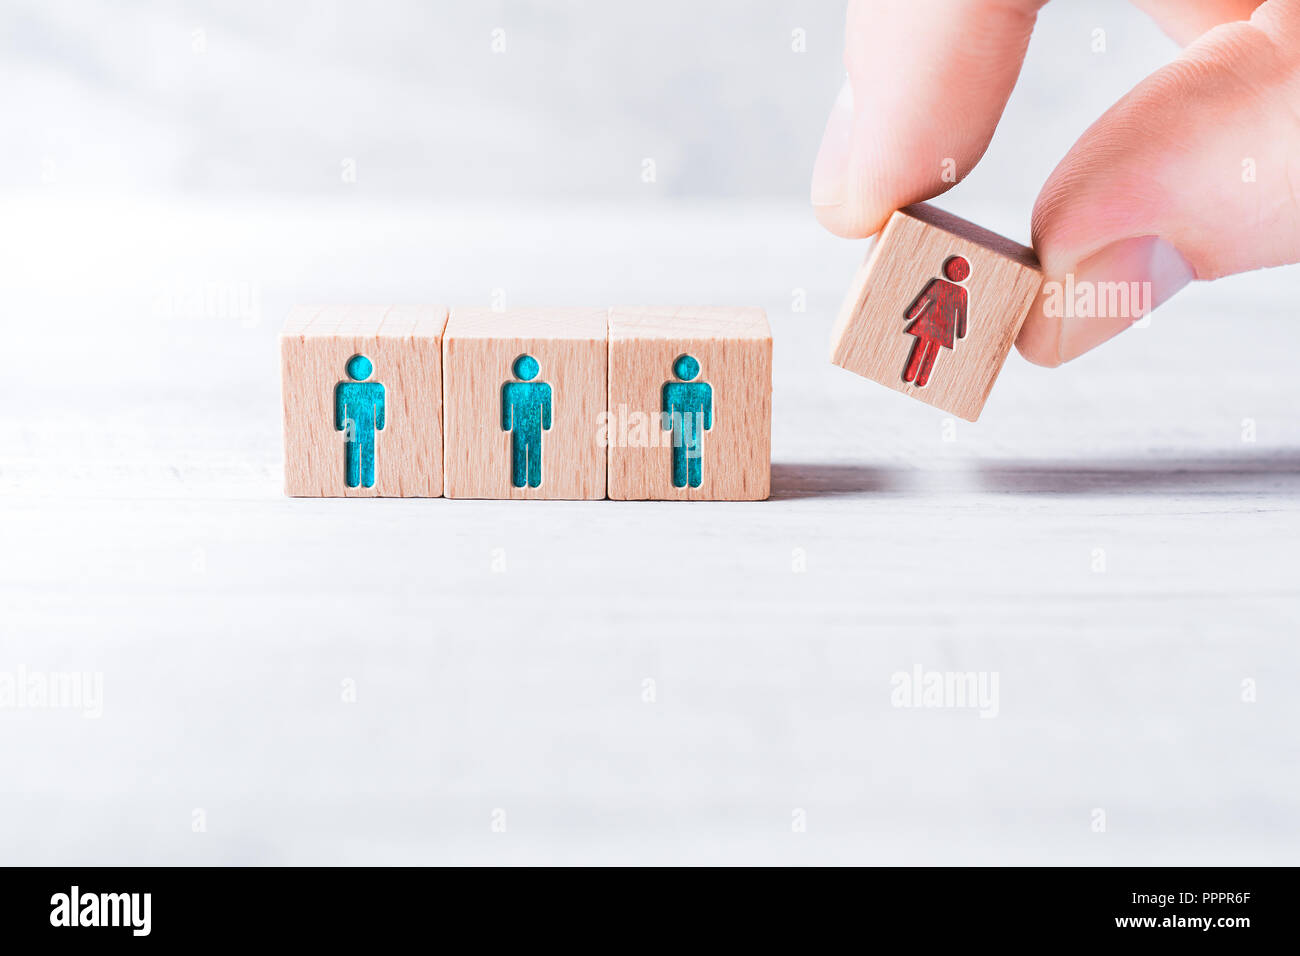 Les doigts masculins de l'ajout d'un bloc avec une femelle de couleur différente à l'icône 3 blocs avec l'égalité homme de couleur des icônes sur un tableau - Concept de l'égalité Banque D'Images